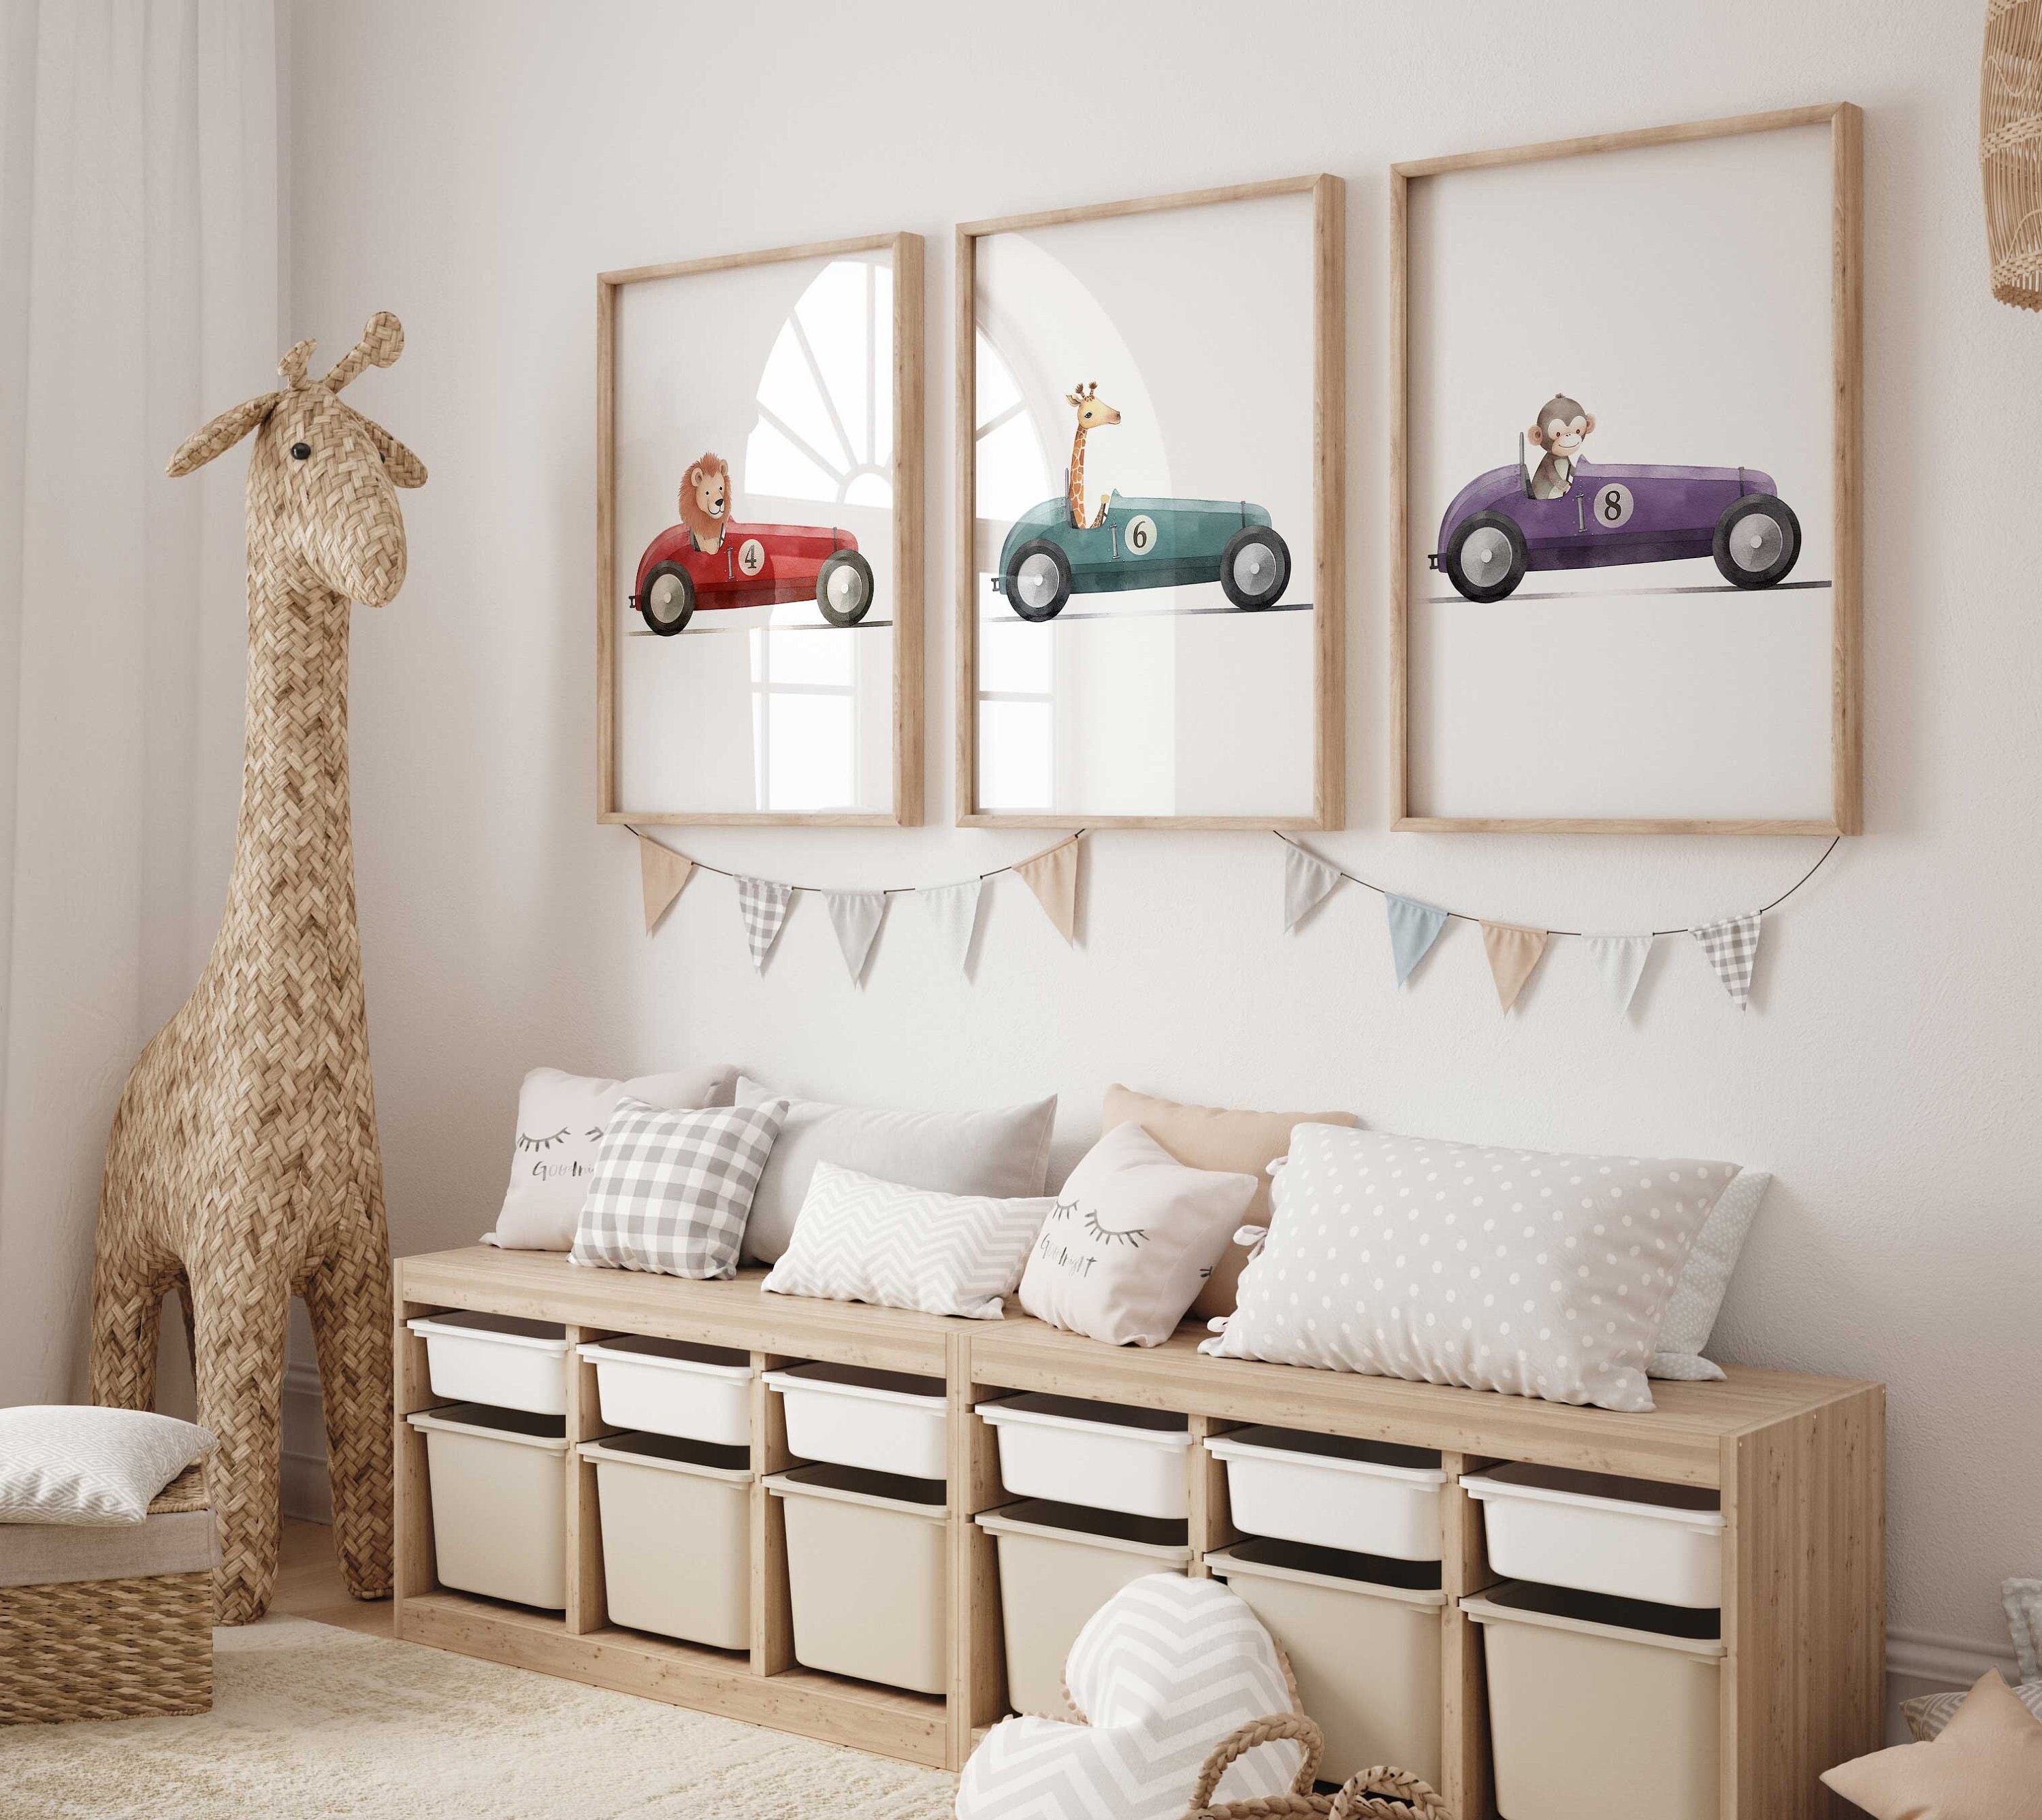 Nursery Car Throw Pillow, Car Plush Toy, Car Baby Room Decor, Kids